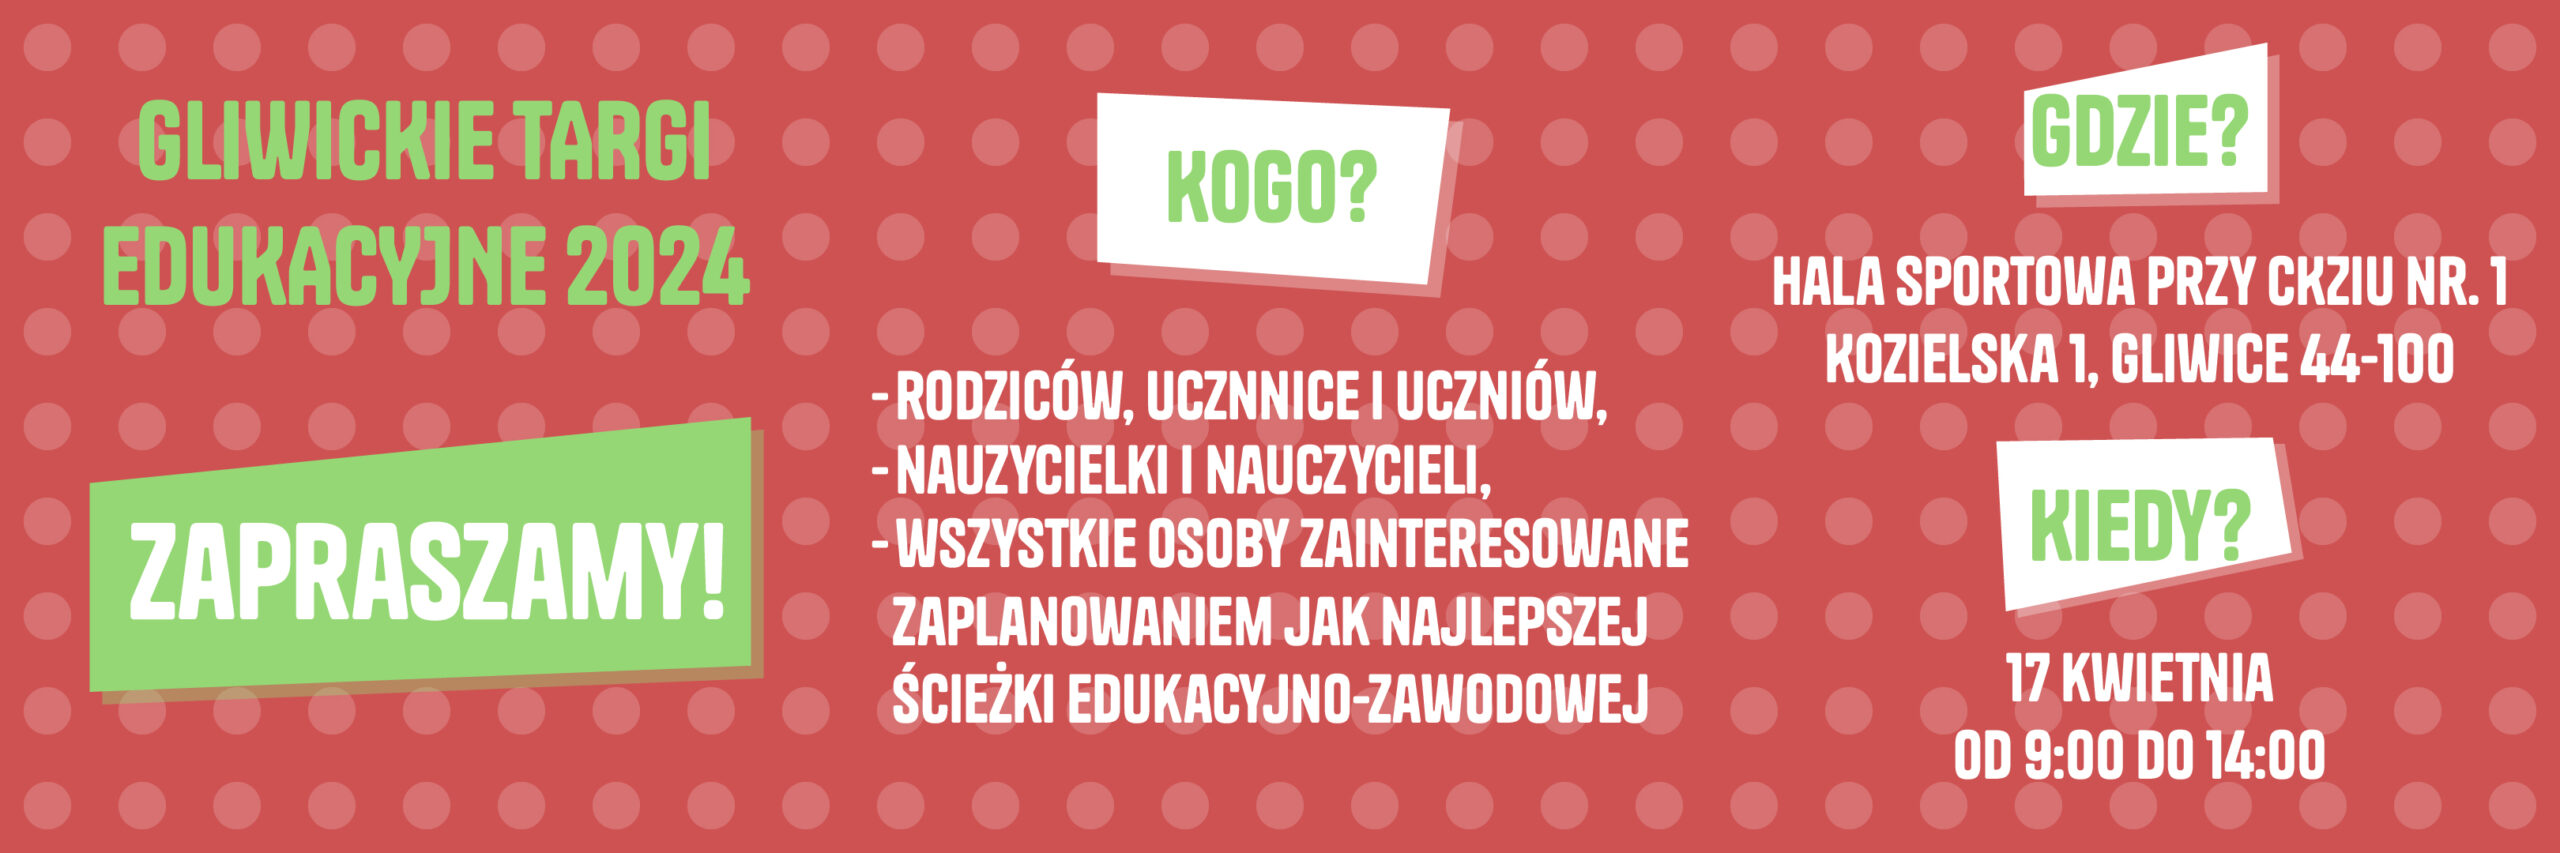 informacja o targach edukacyjnych odbywających się 17.04.2024 od godziny 9.00-14.00 w Gliwicach na ilicy Kozielskiej